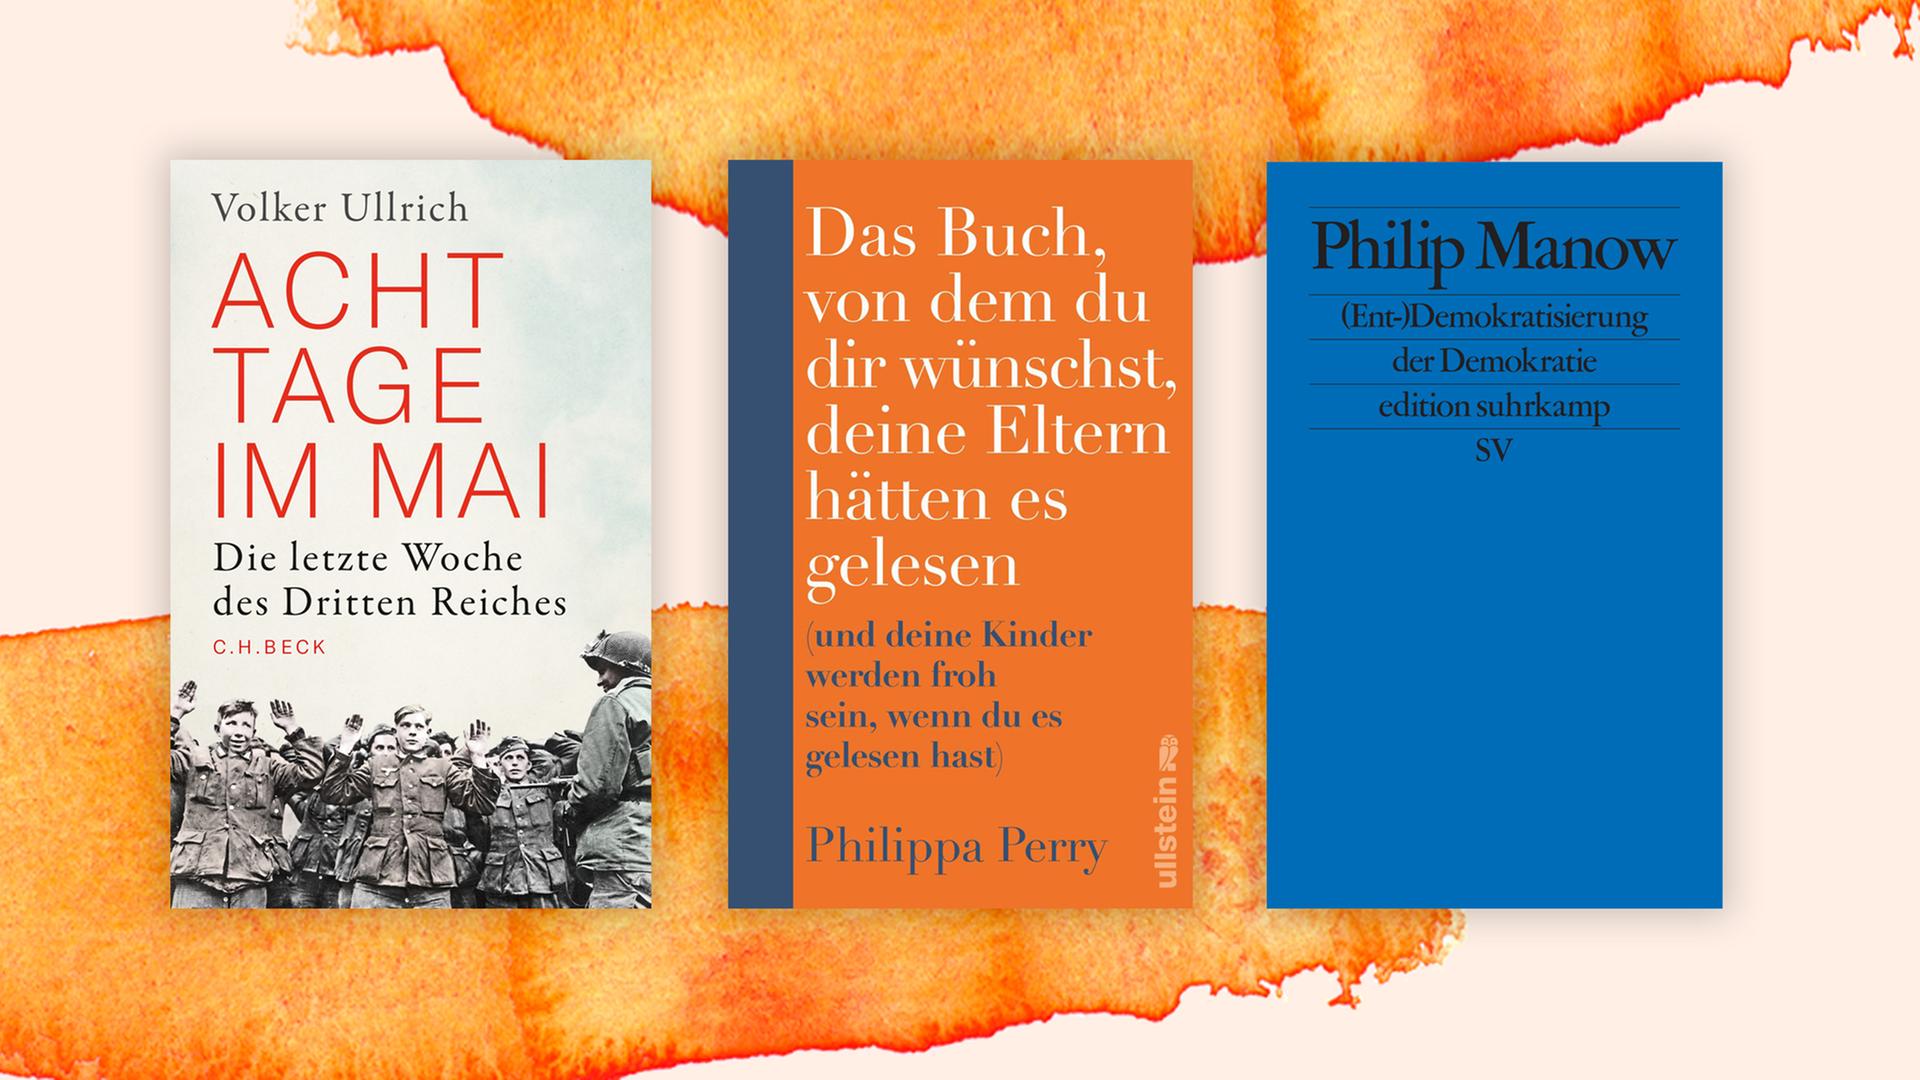 Drei der besten Sachbücher im Juni: "Acht Tage im Mai" von Volker Ullrich; "Das Buch, von dem du dir wünschst, deine Eltern hätten es gelesen" von Philippa Perry; "(Ent-)Demokratisierung der Demokratie" von Philip Manow.